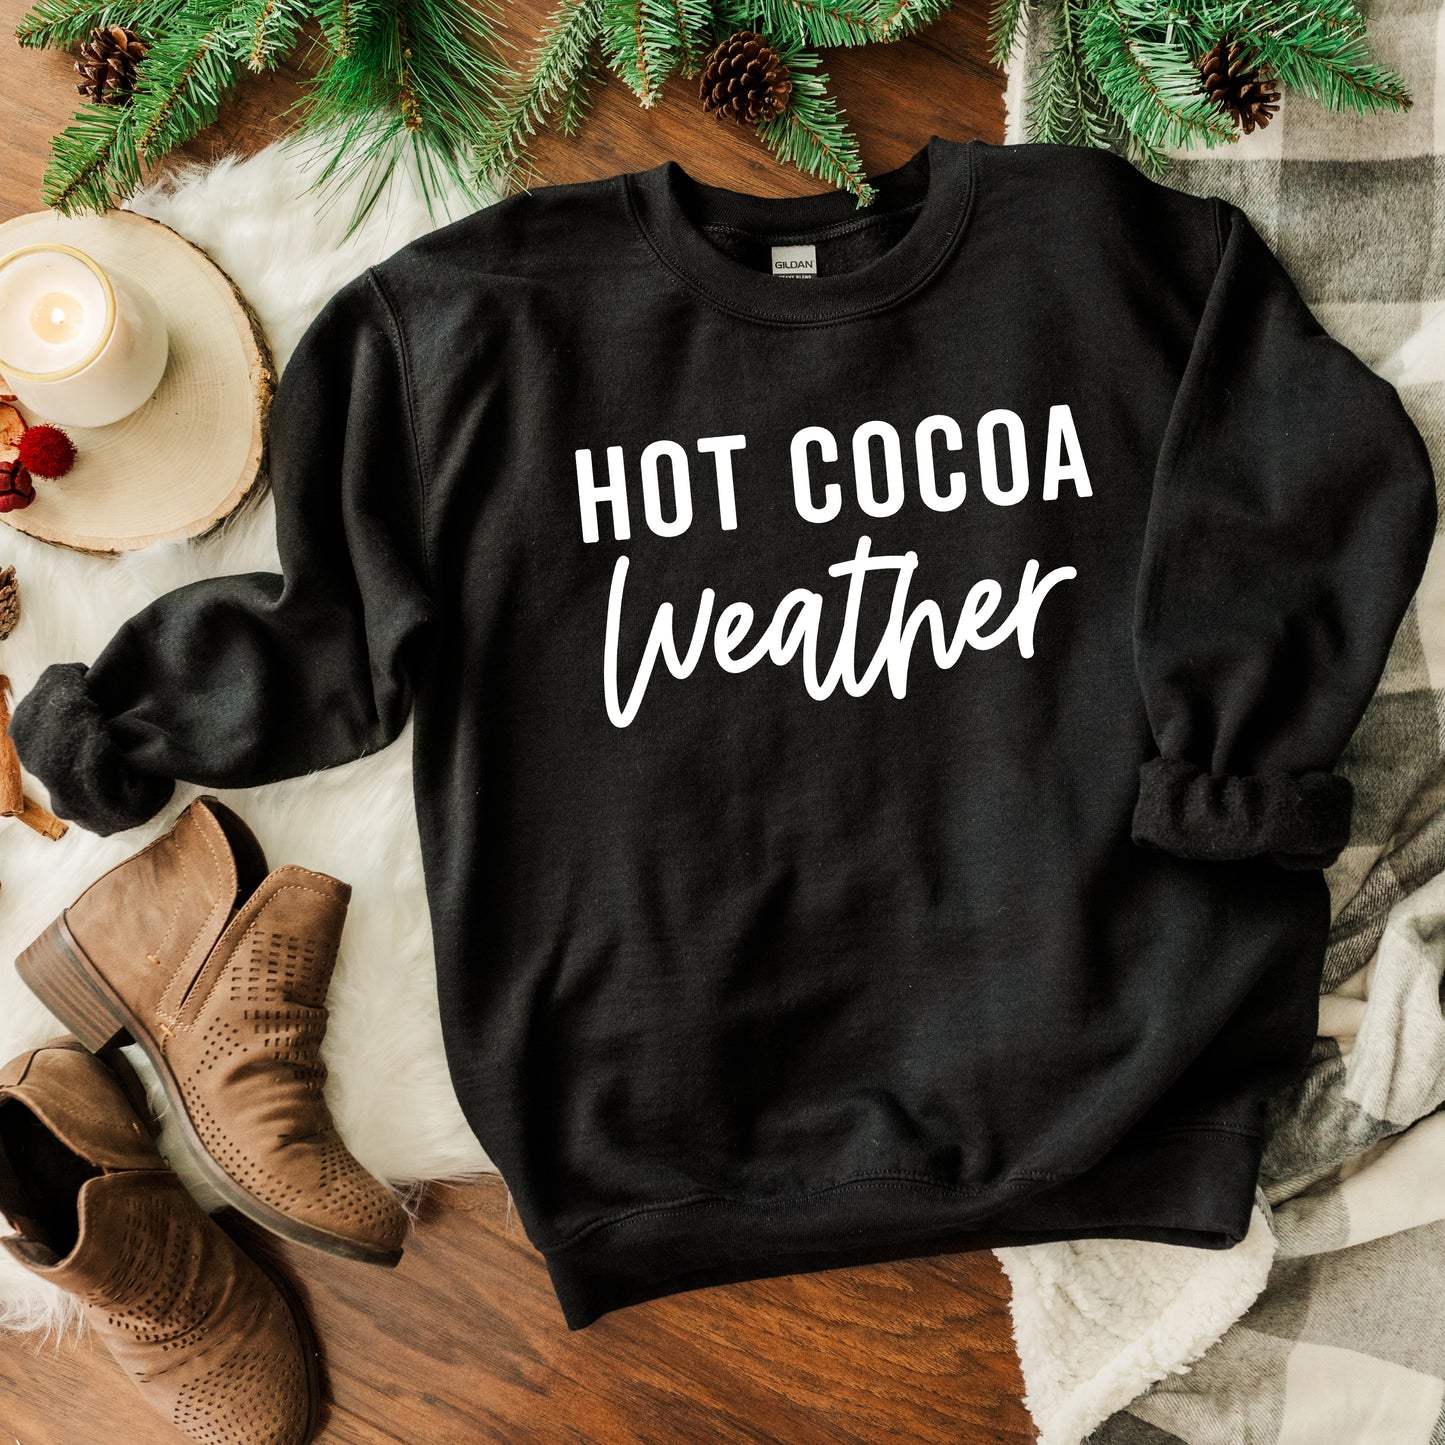 Hot Cocoa Weather | Sweatshirt